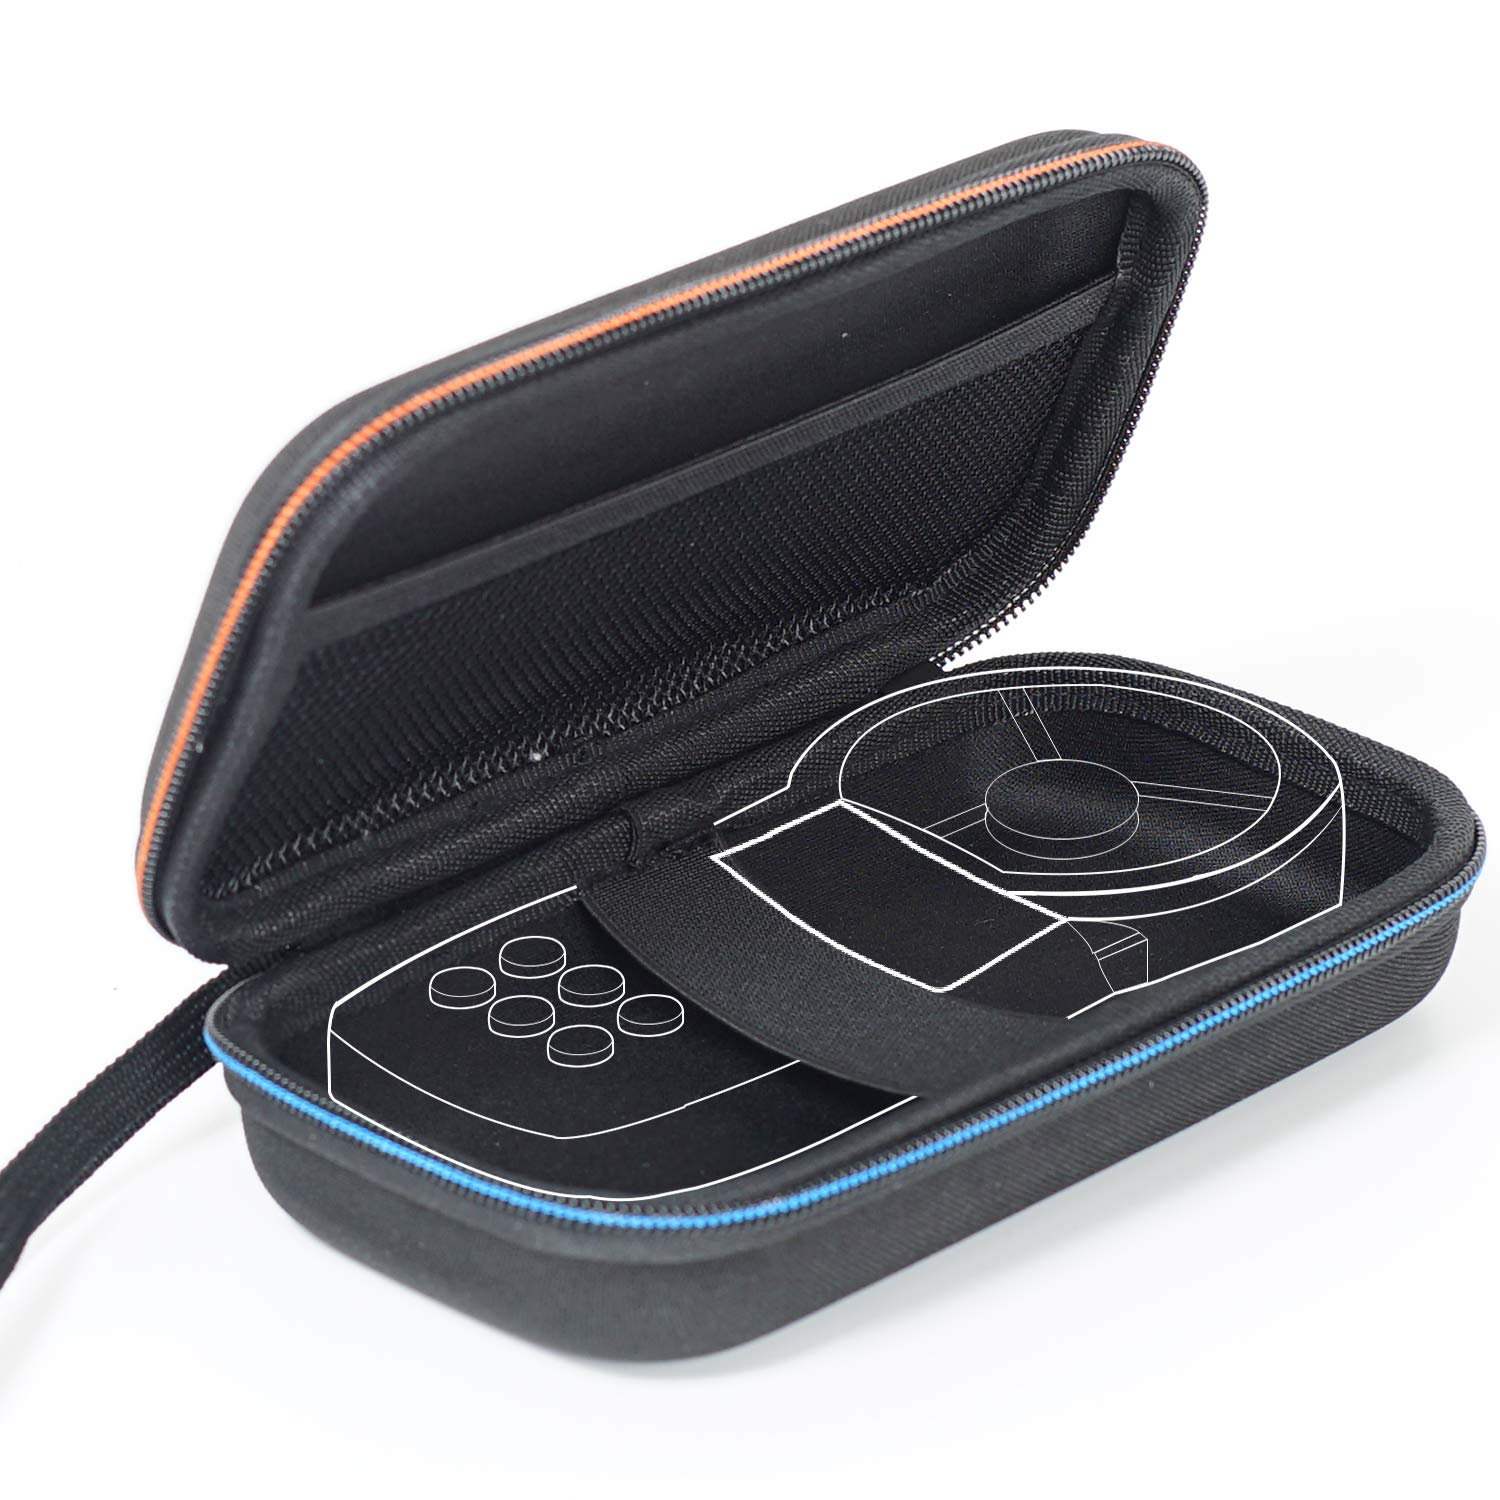 BTMETER Hard Travel case Bag Protect BT-100 Series Handheld Anemometer